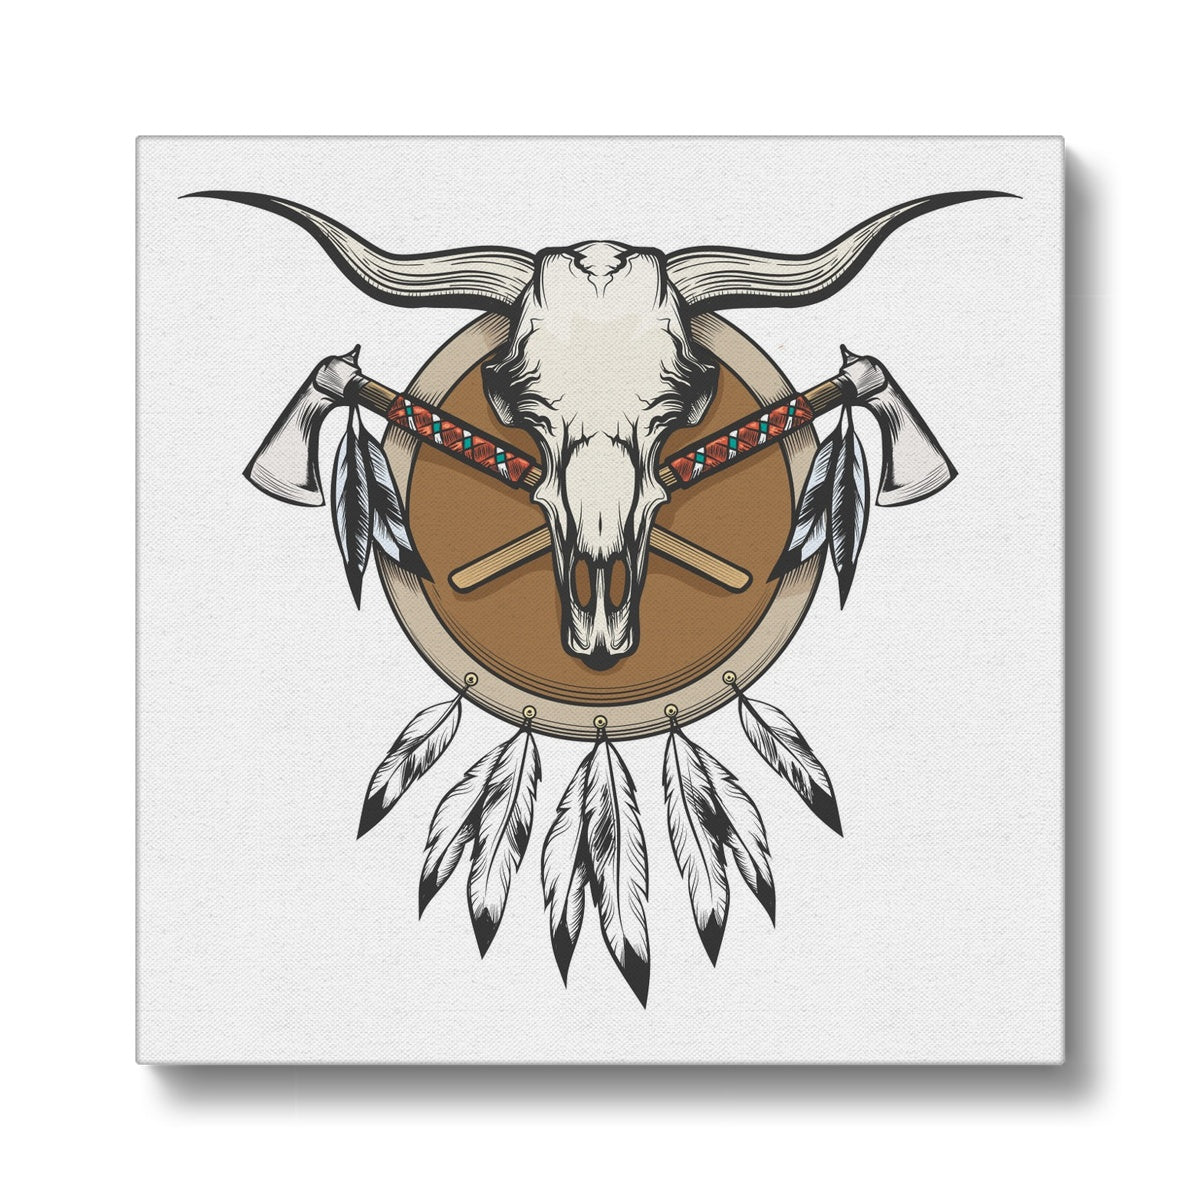 Native American Skull Illustration Canvas